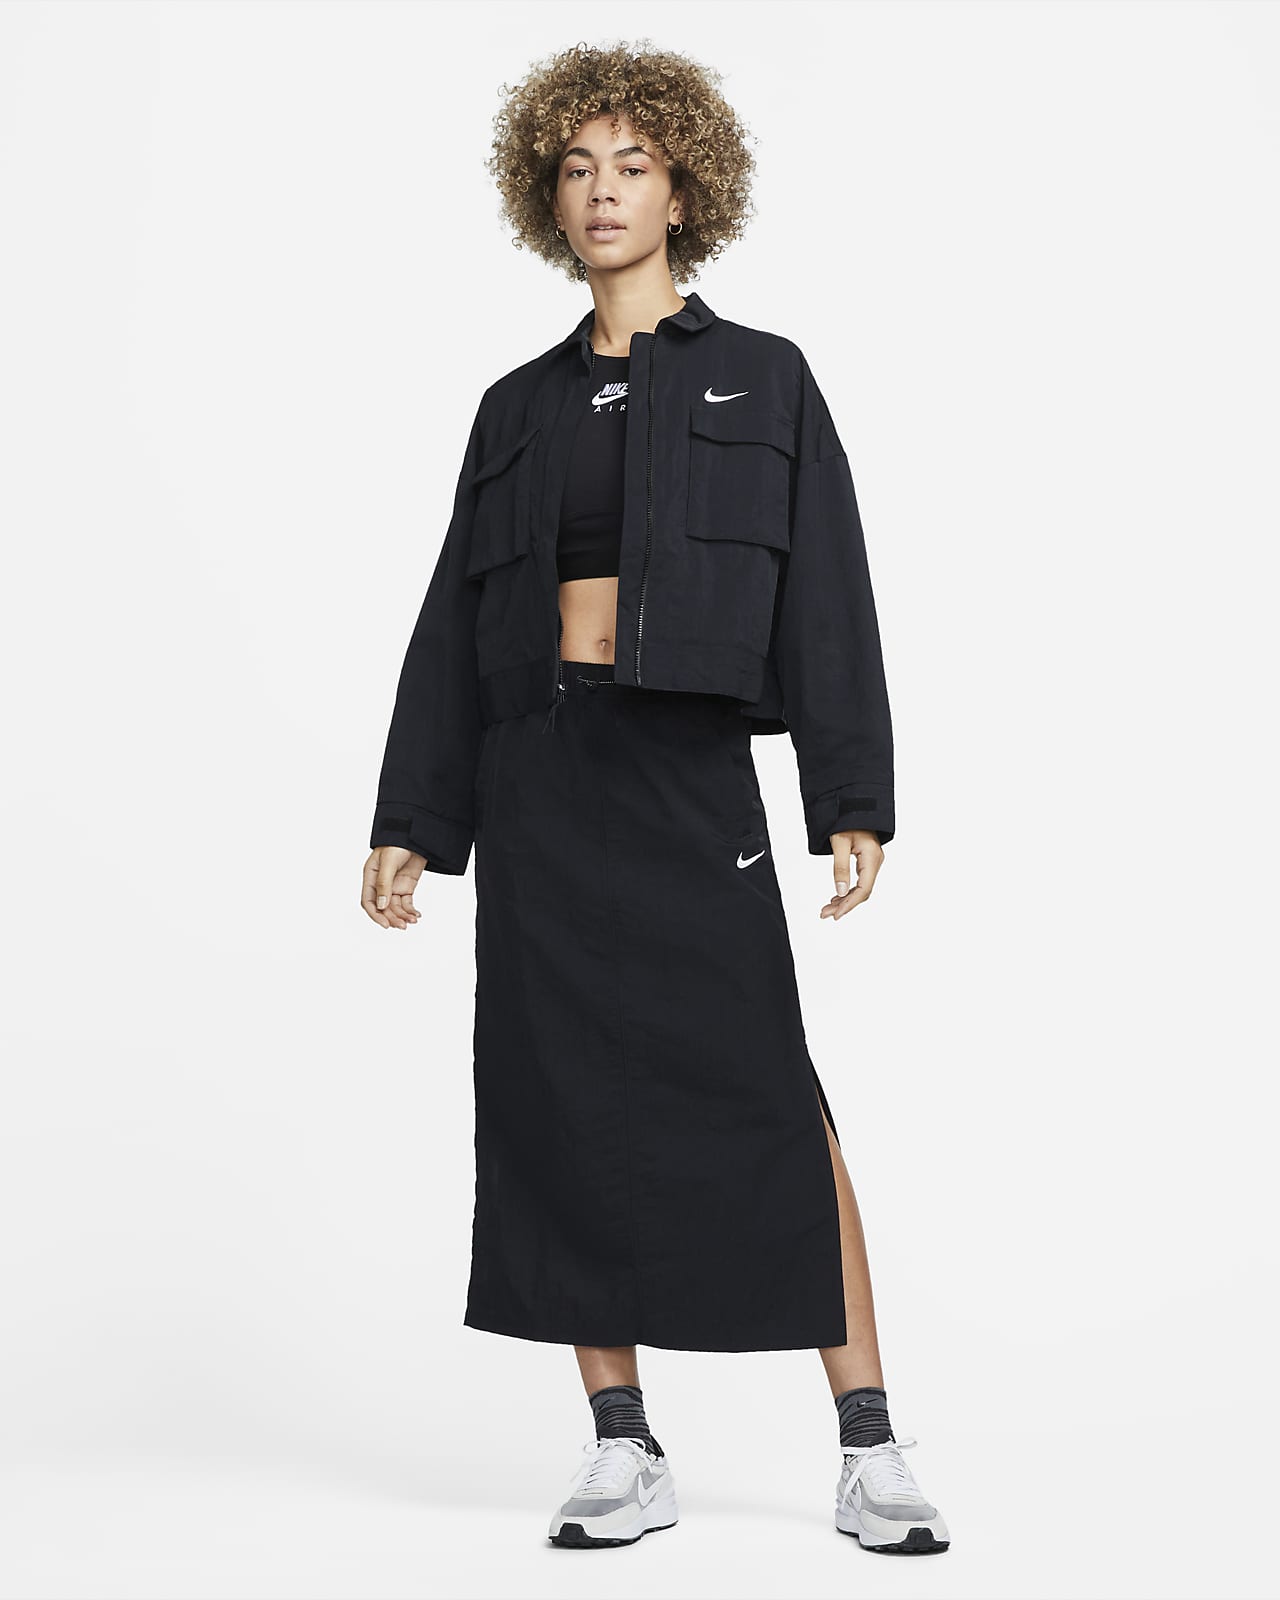 Nike Women's High-Waisted Woven Skirt – Rock City Kicks